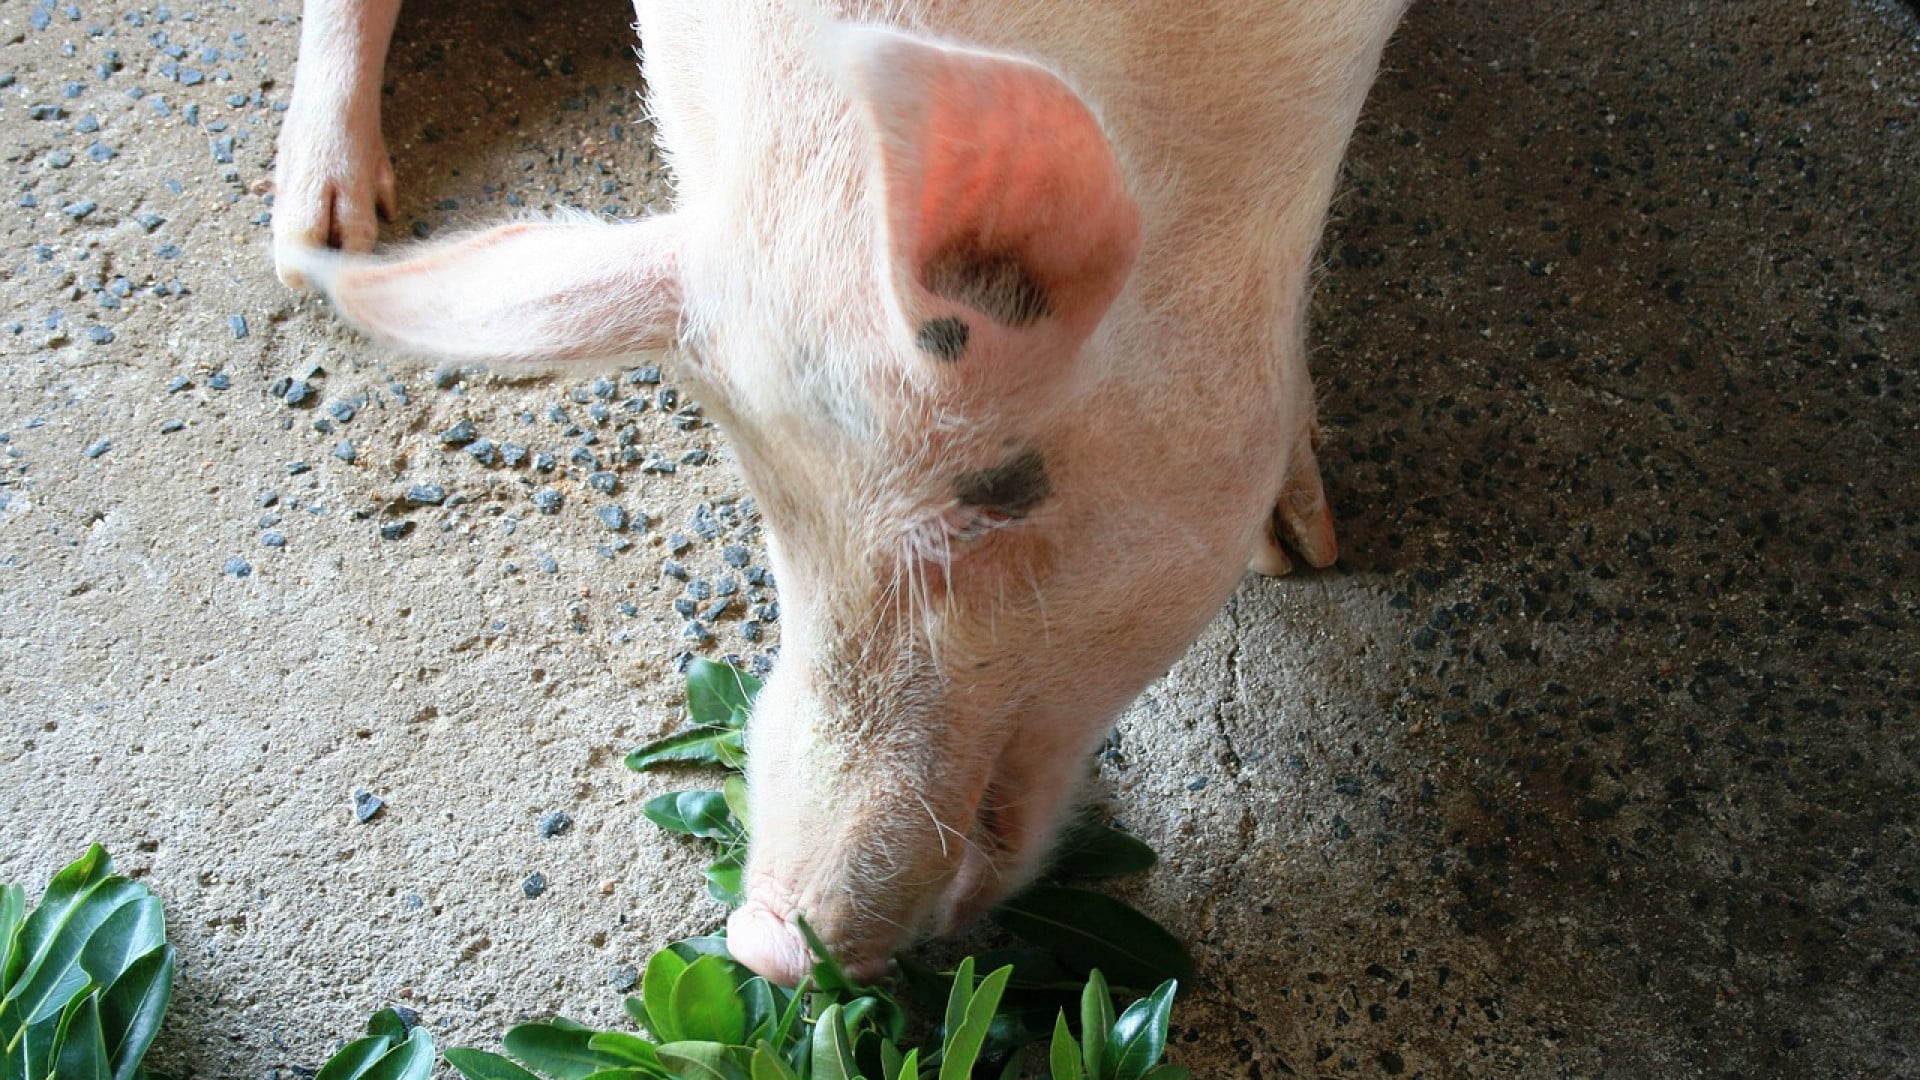 Agriculteurs : quel diamètre de tubes aciers choisir pour alimenter des porcs ?